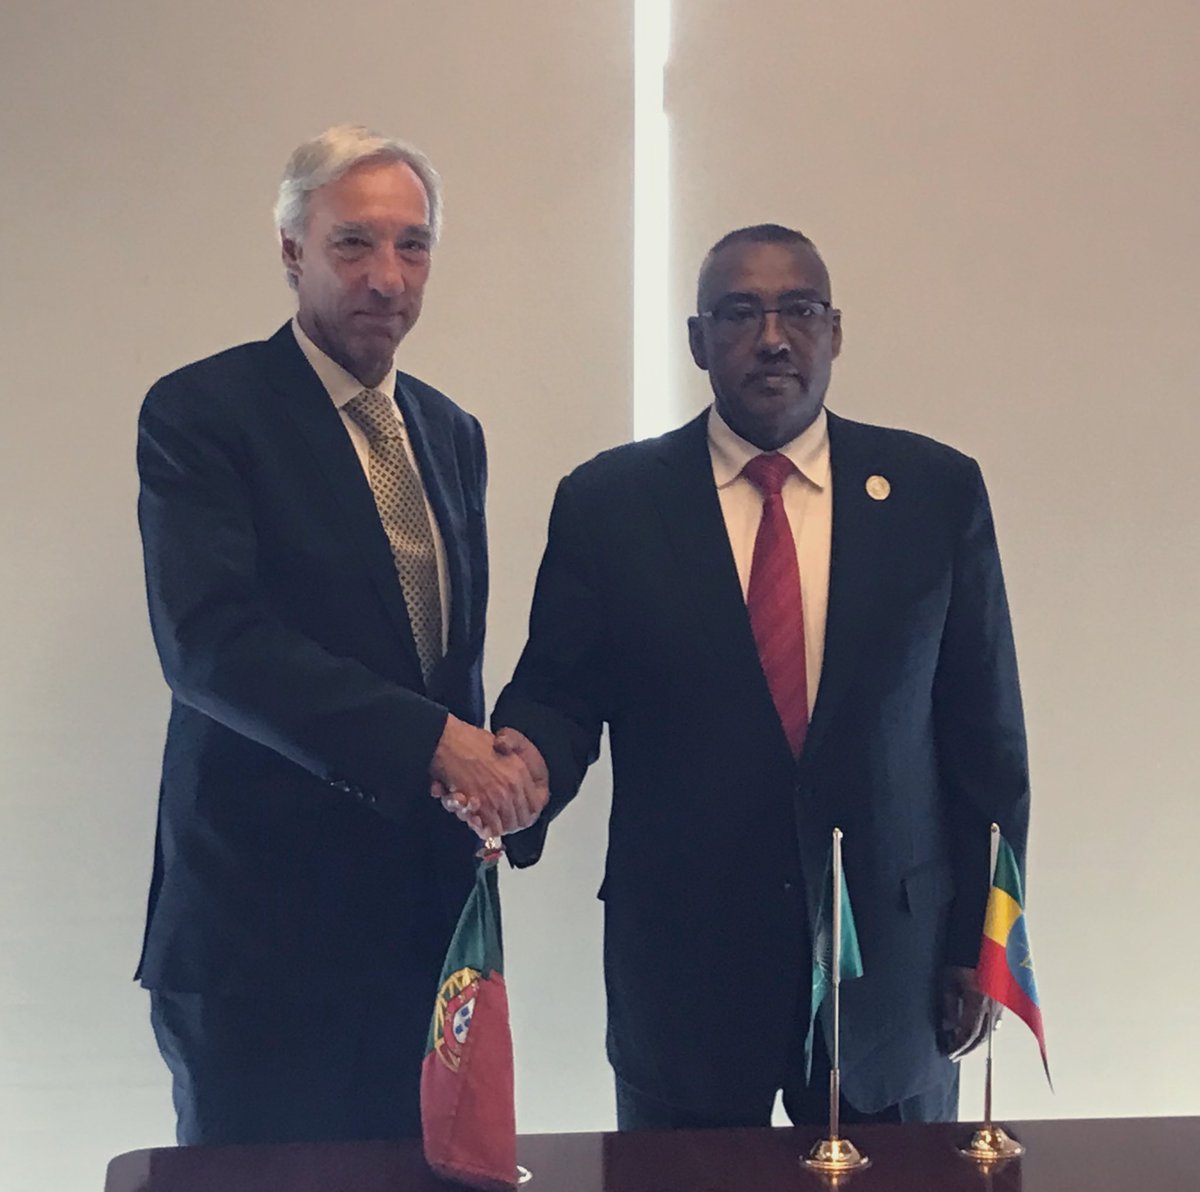 À margem do Conselho Executivo da União Africana, o MNE @JoaoCravinho reuniu-se com o homólogo etíope @DemekeHasen. Os últimos desenvolvimentos do processo de Paz, o potencial dos laços históricos que unem 🇵🇹🇪🇹 e as perspetivas na relação com a UE foram os temas em destaque.